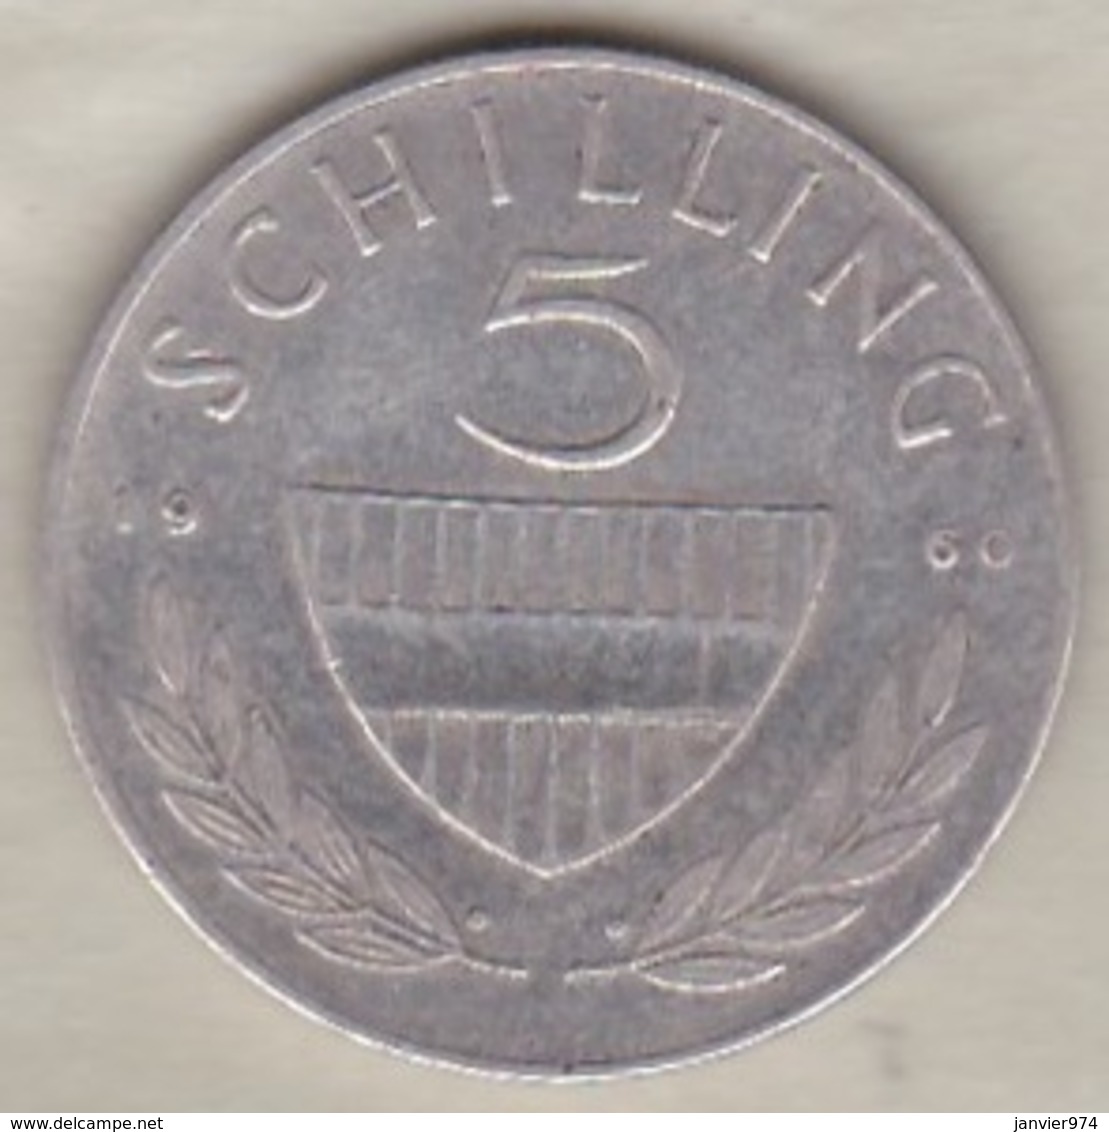 Autriche 5 Schilling 1960 En Argent - Autriche